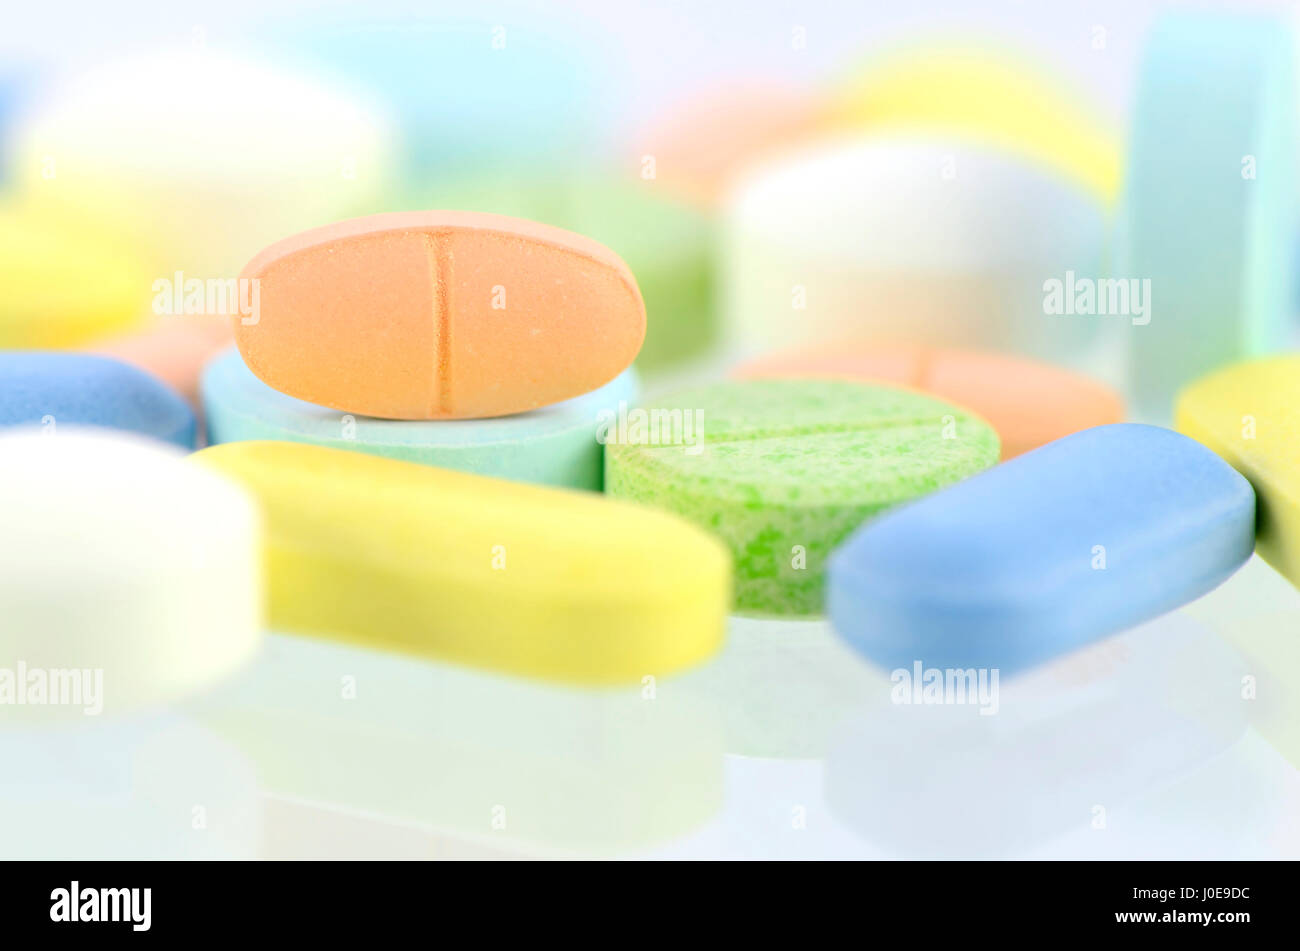 Medizin-Hintergrund, Apotheke Hintergrund, Medizin-Vorlage in Pastell-Ton. Stockfoto